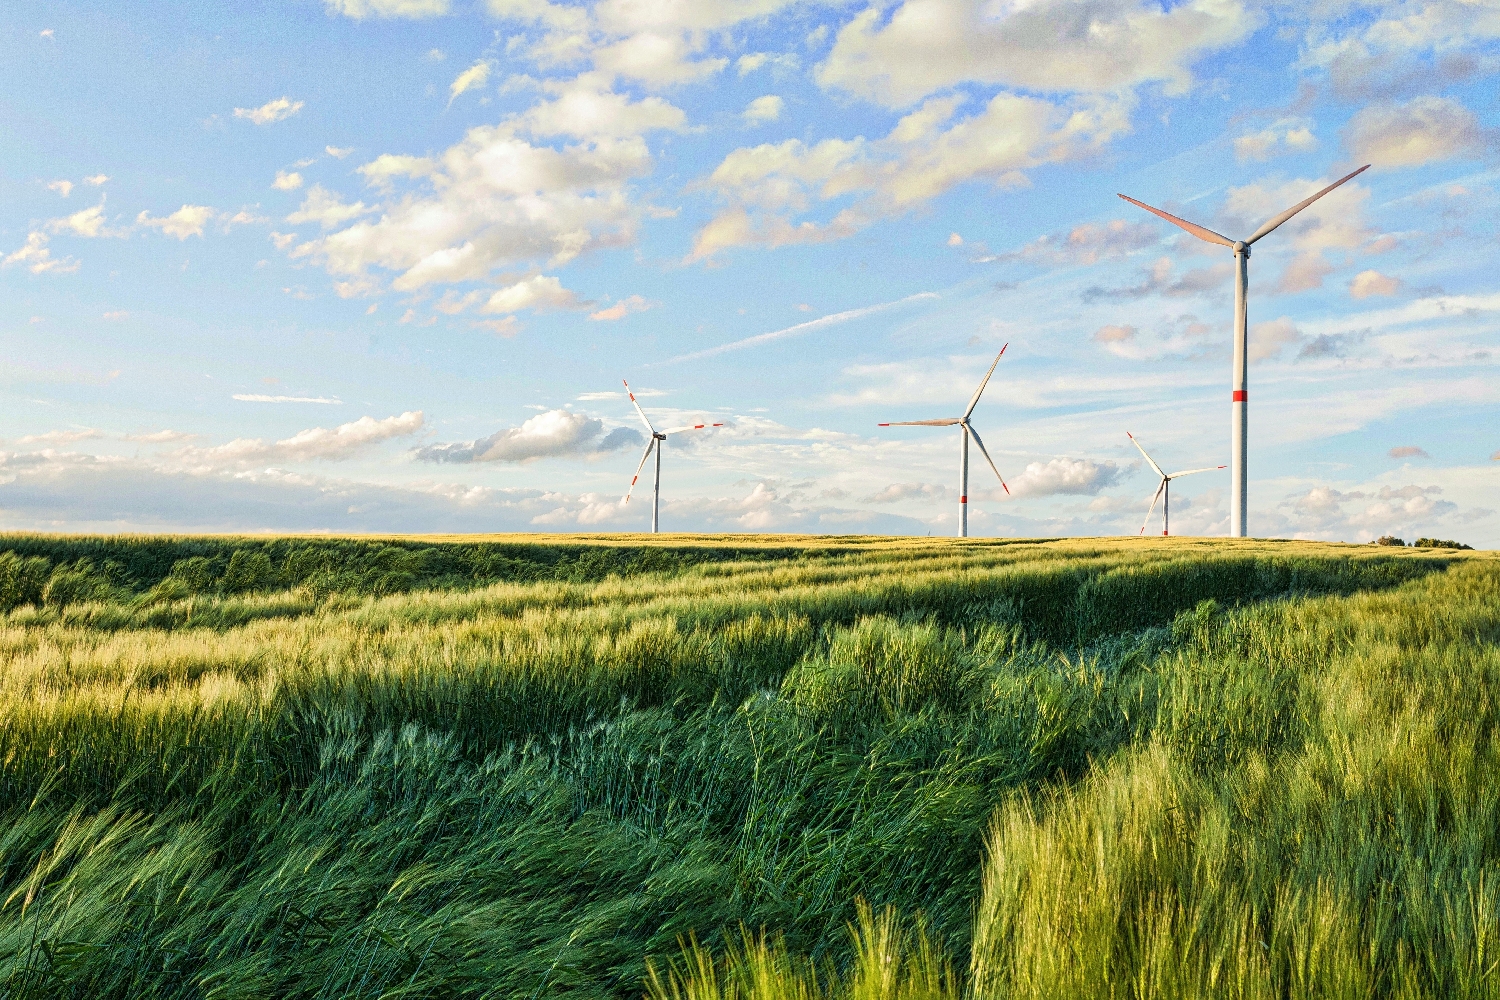 Ropný gigant Shell uzavírá dohodu o nákupu energie z největší větrné farmy na světě